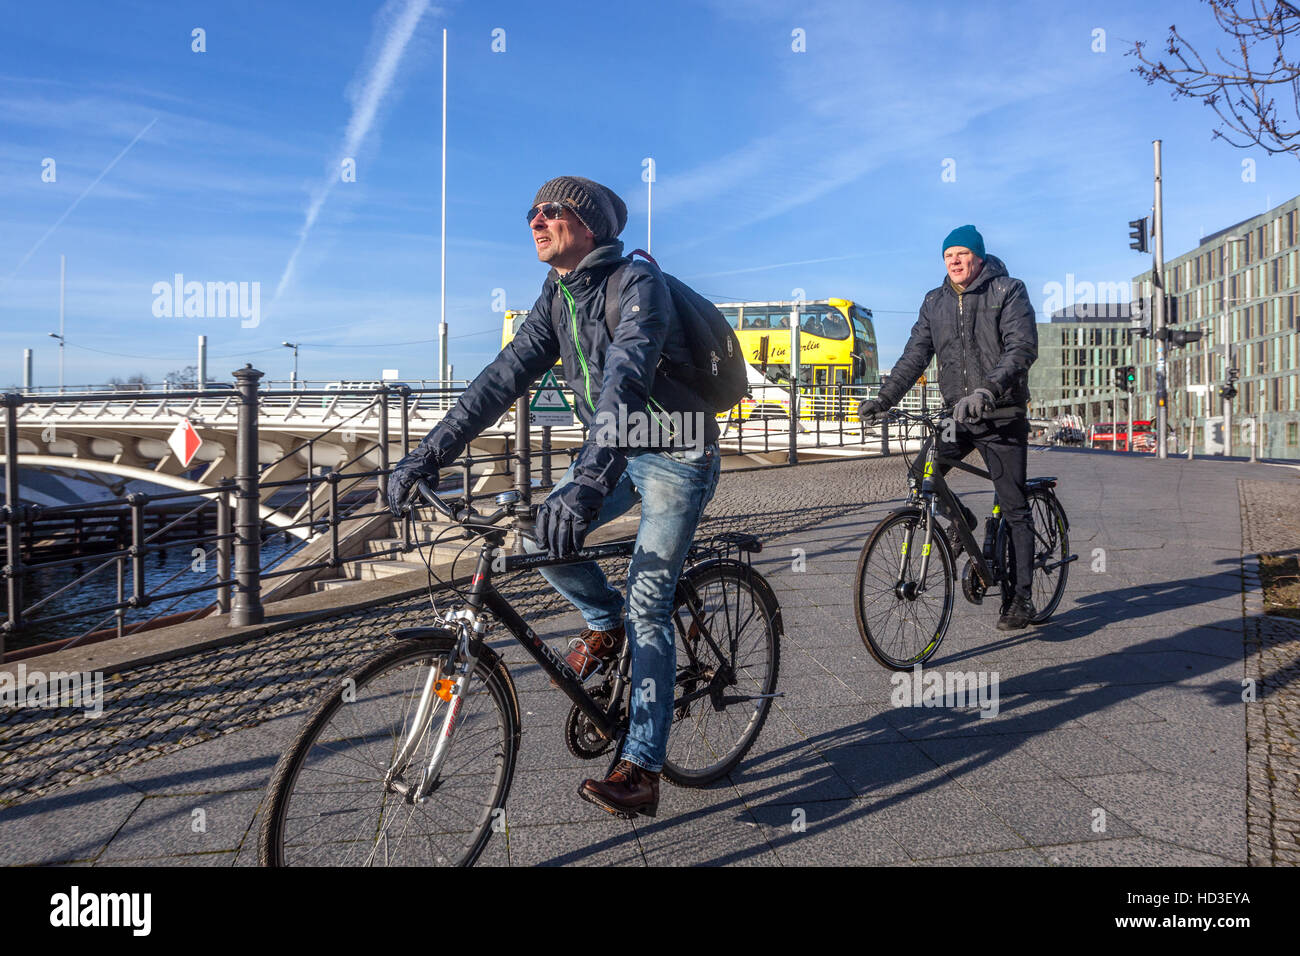 Les gens font du vélo, les touristes sur un vélo près du Pont du Prince de la Couronne, Berlin cyclisme Allemagne vélo tourisme piste cyclable ville Banque D'Images